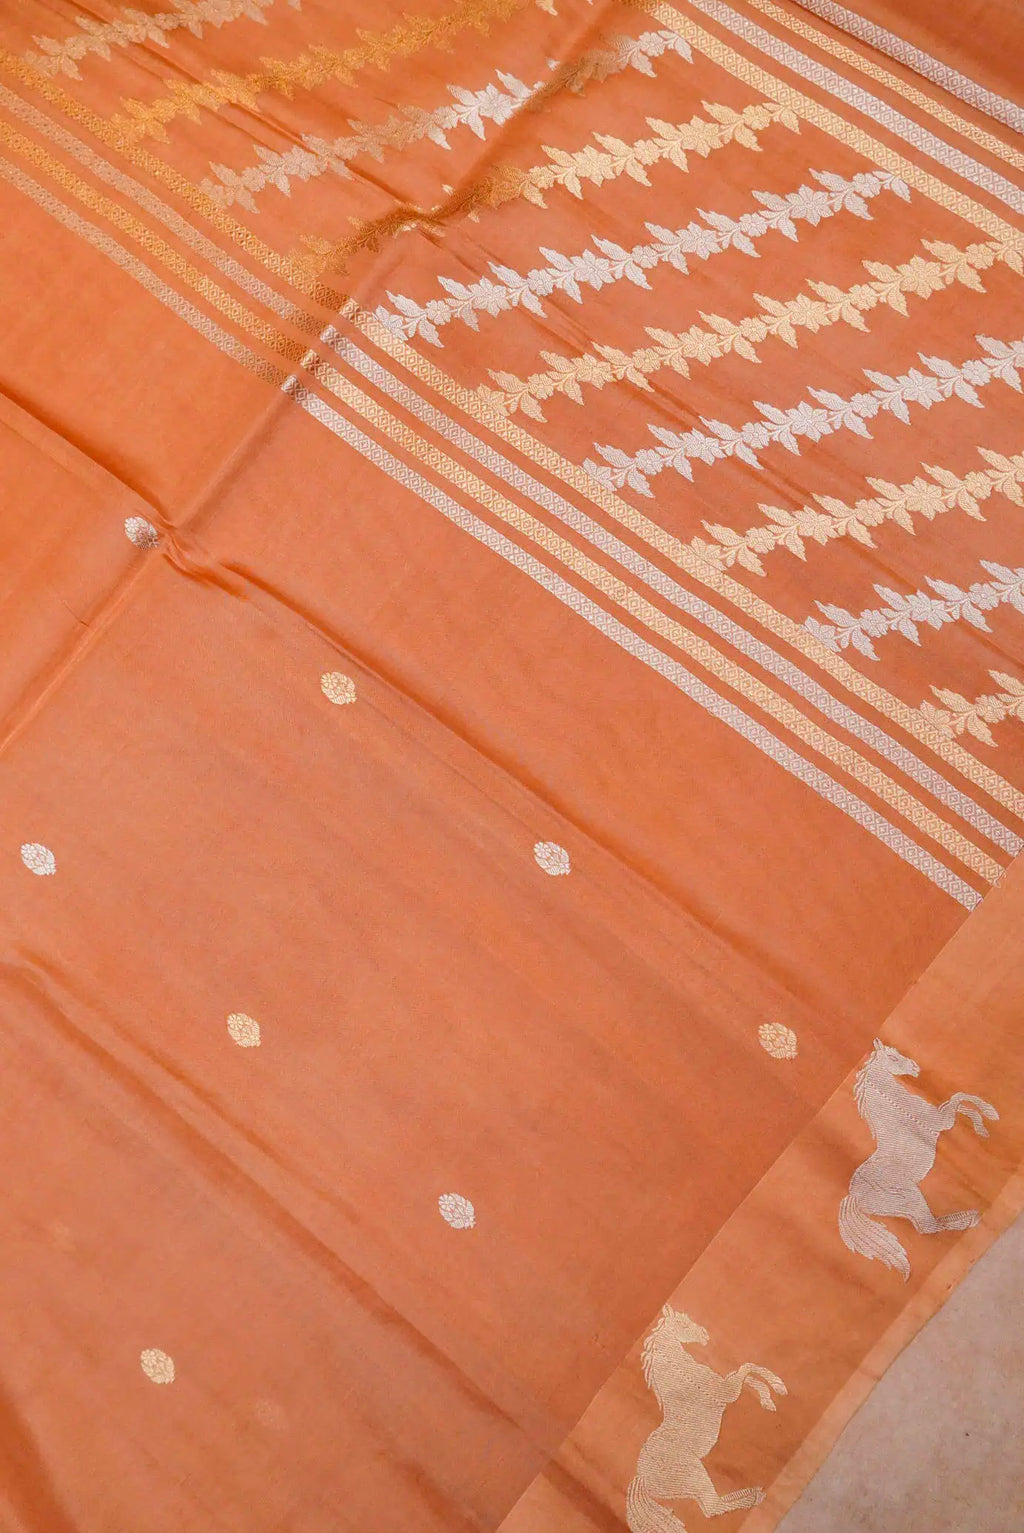 Handwoven Orange Banarasi Katan Soft Silk Saree